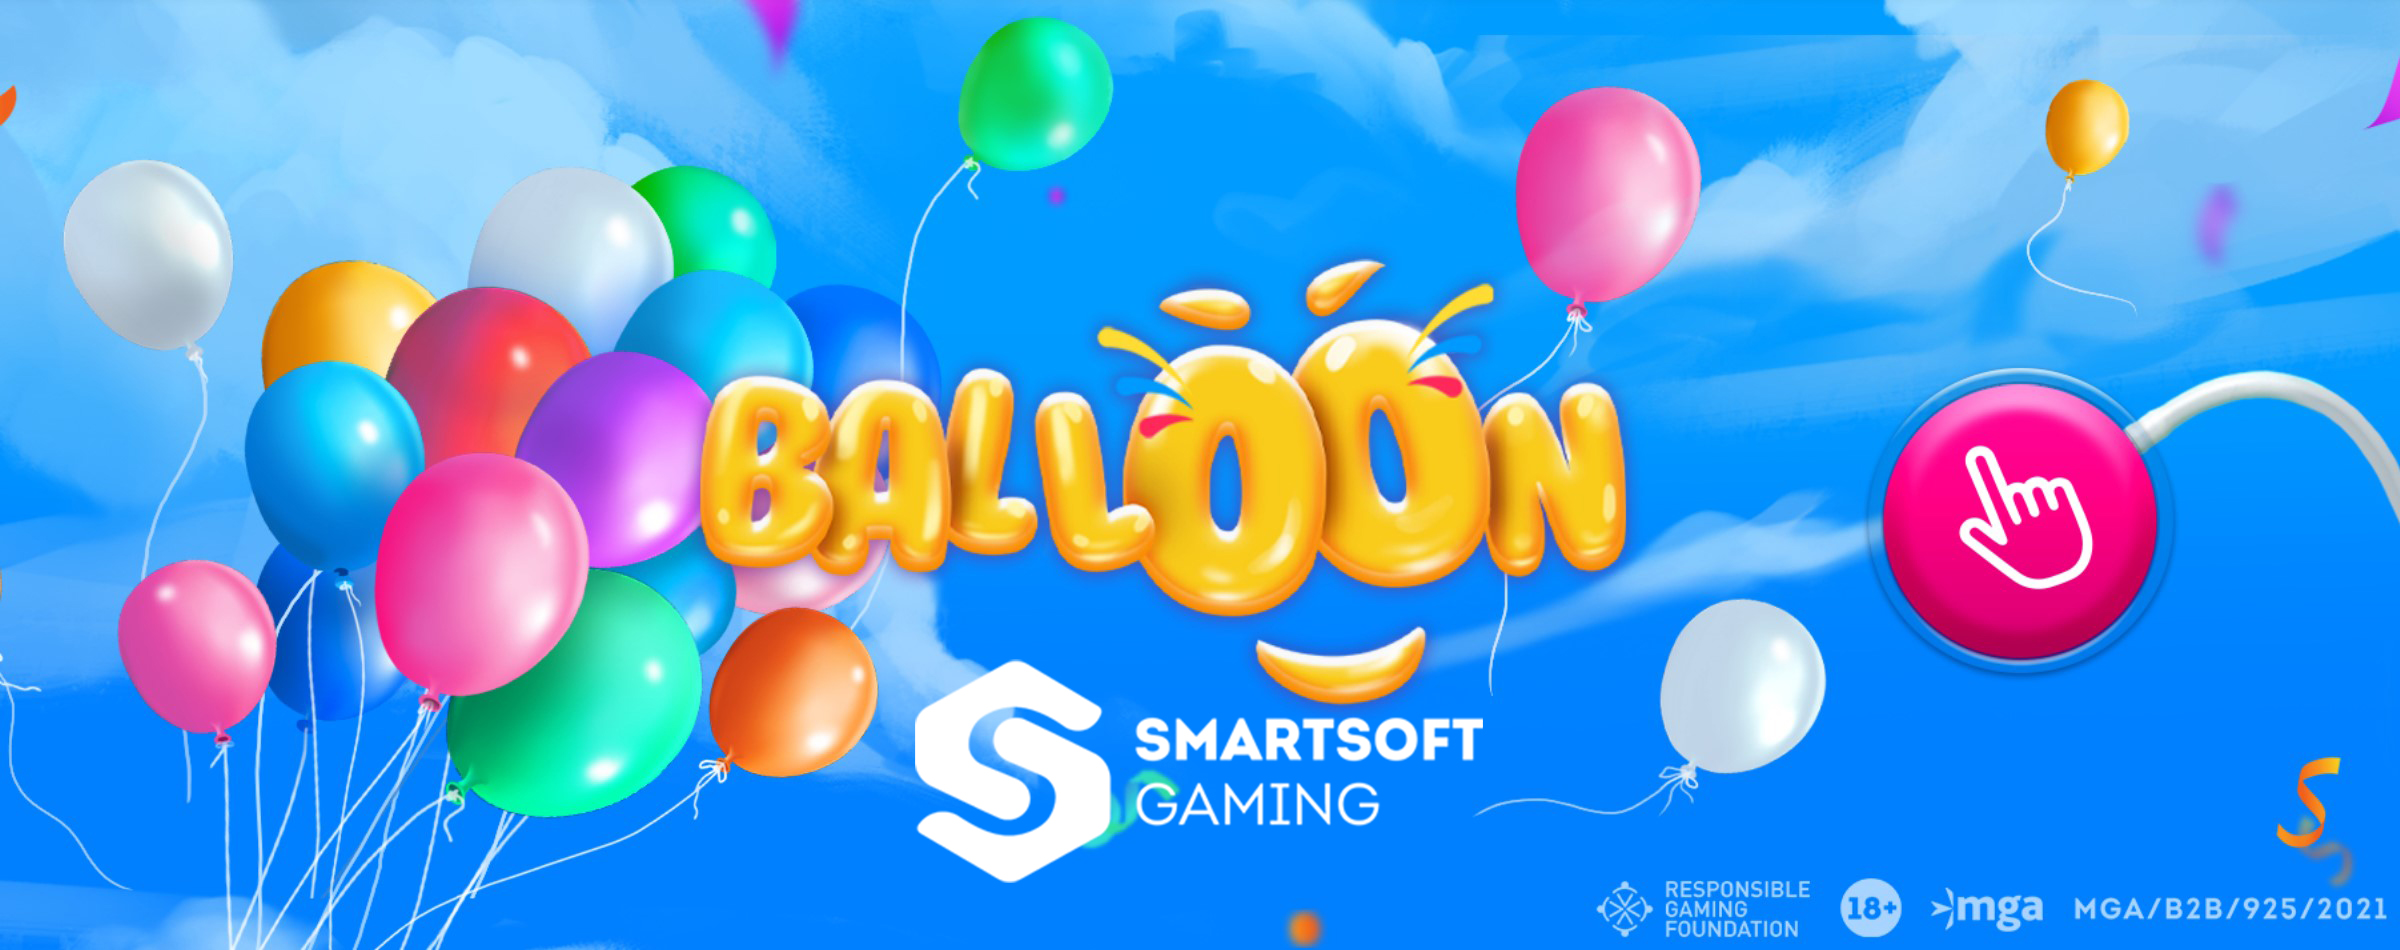 Baloon by SmartSoft Gaming